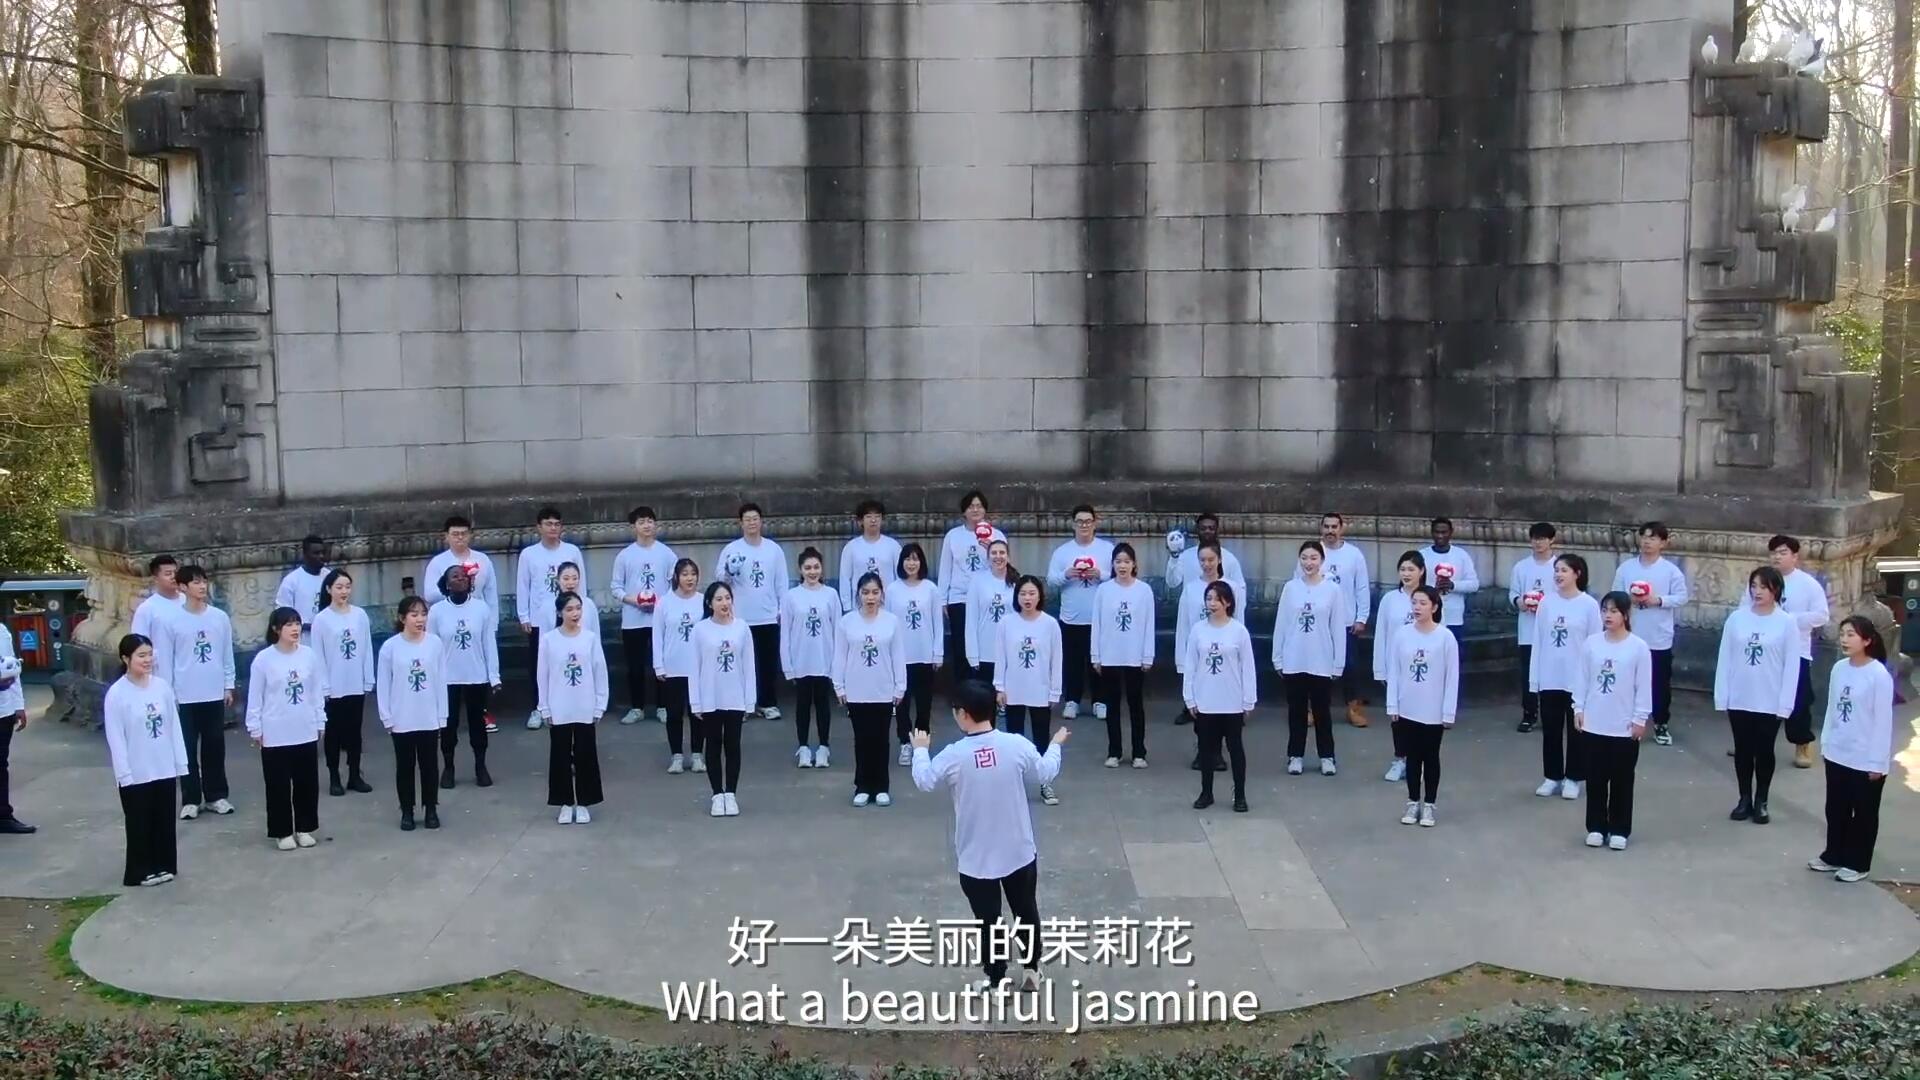 فيديو: طلاب صينيون ومصريون يشدون بأغنية لدورة الألعاب الأولمبية الشتوية في بكين